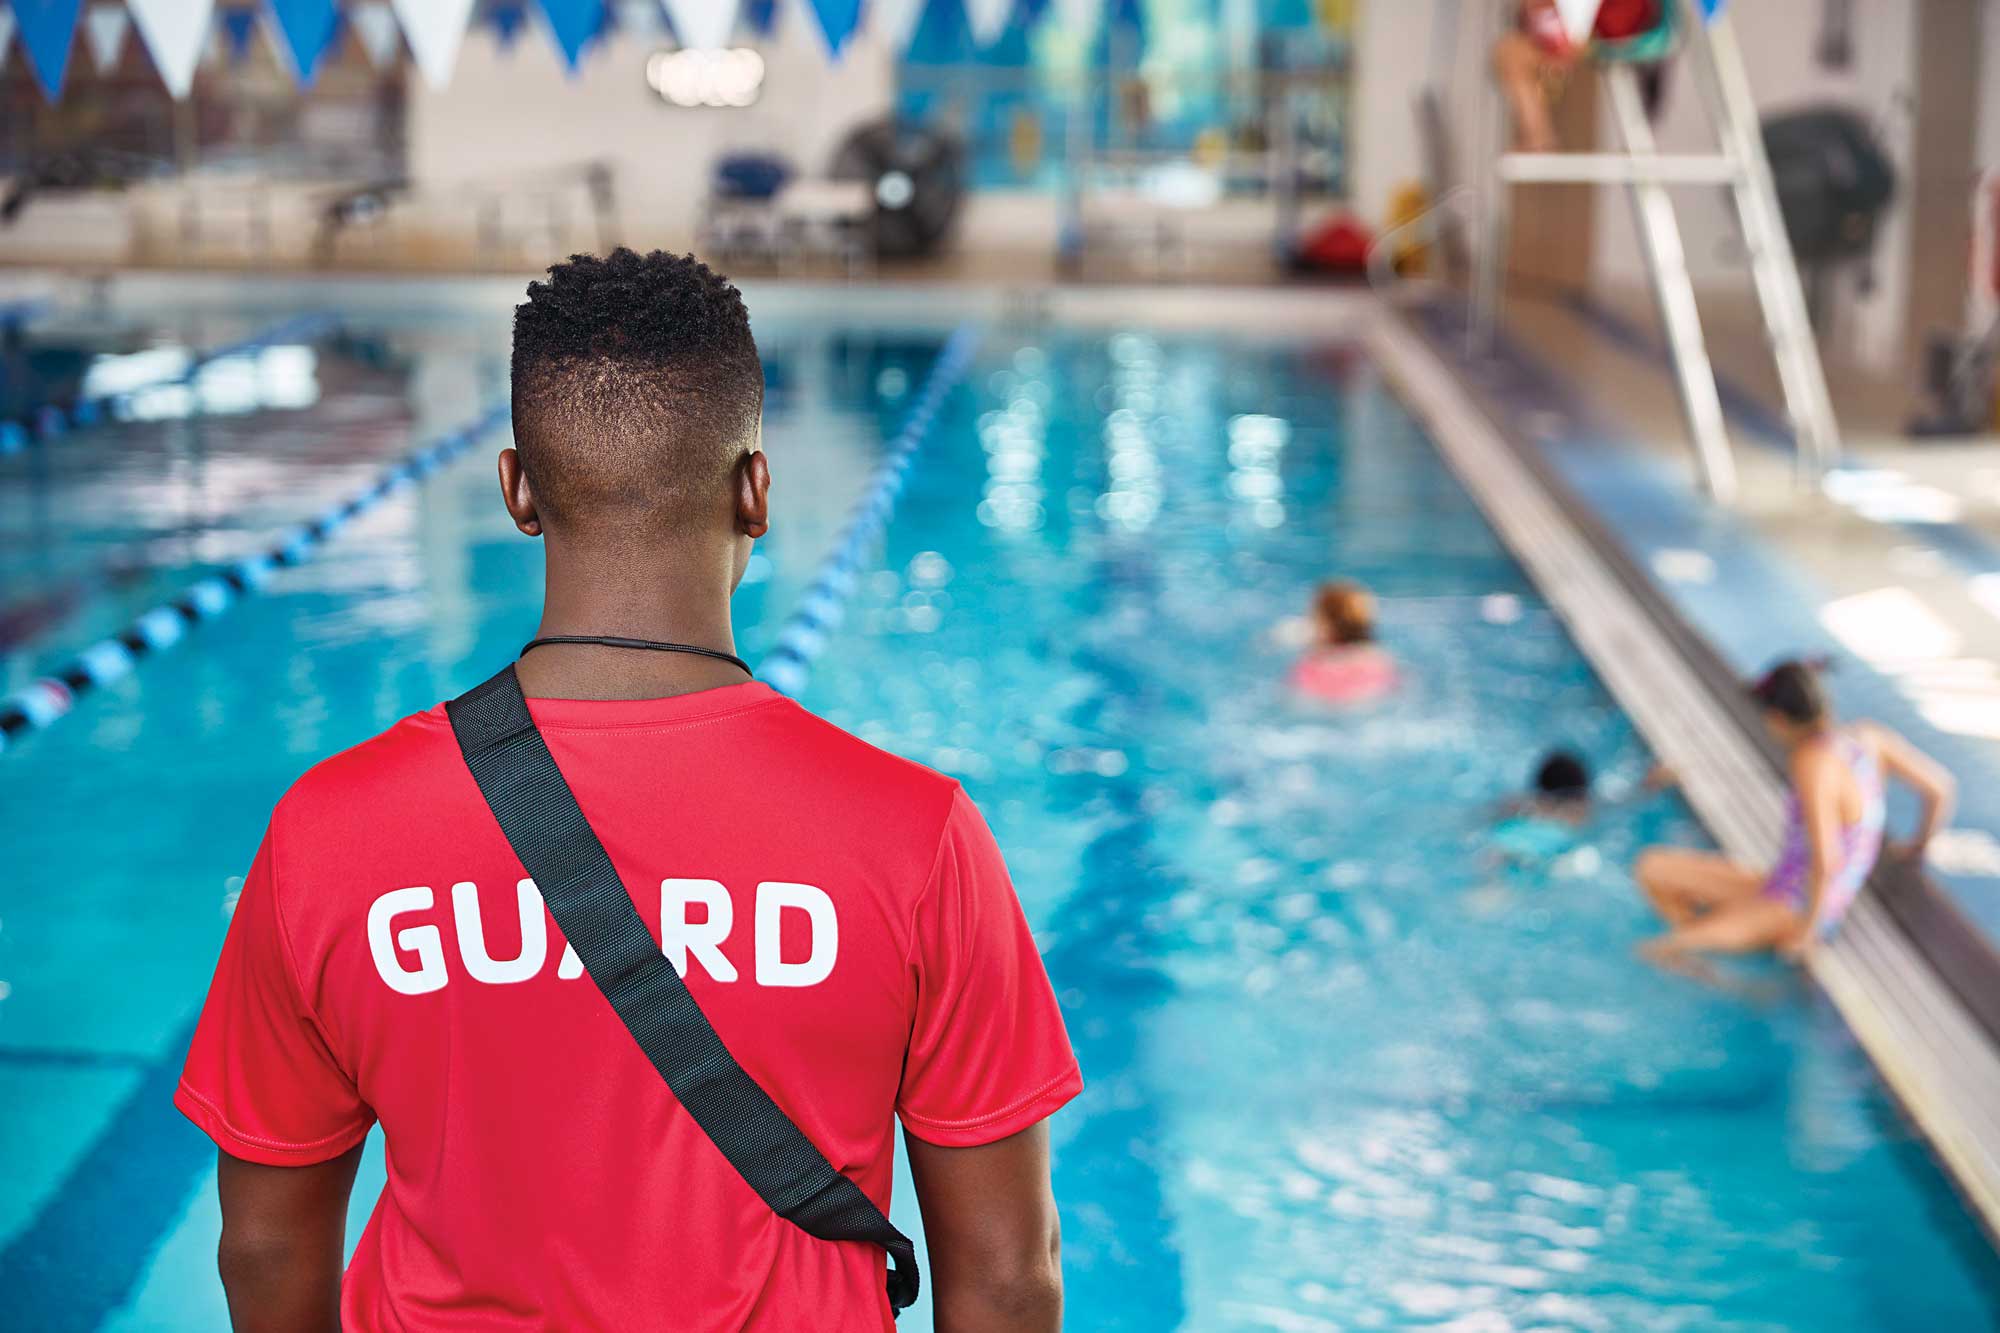 Lifeguard, standing facing pool